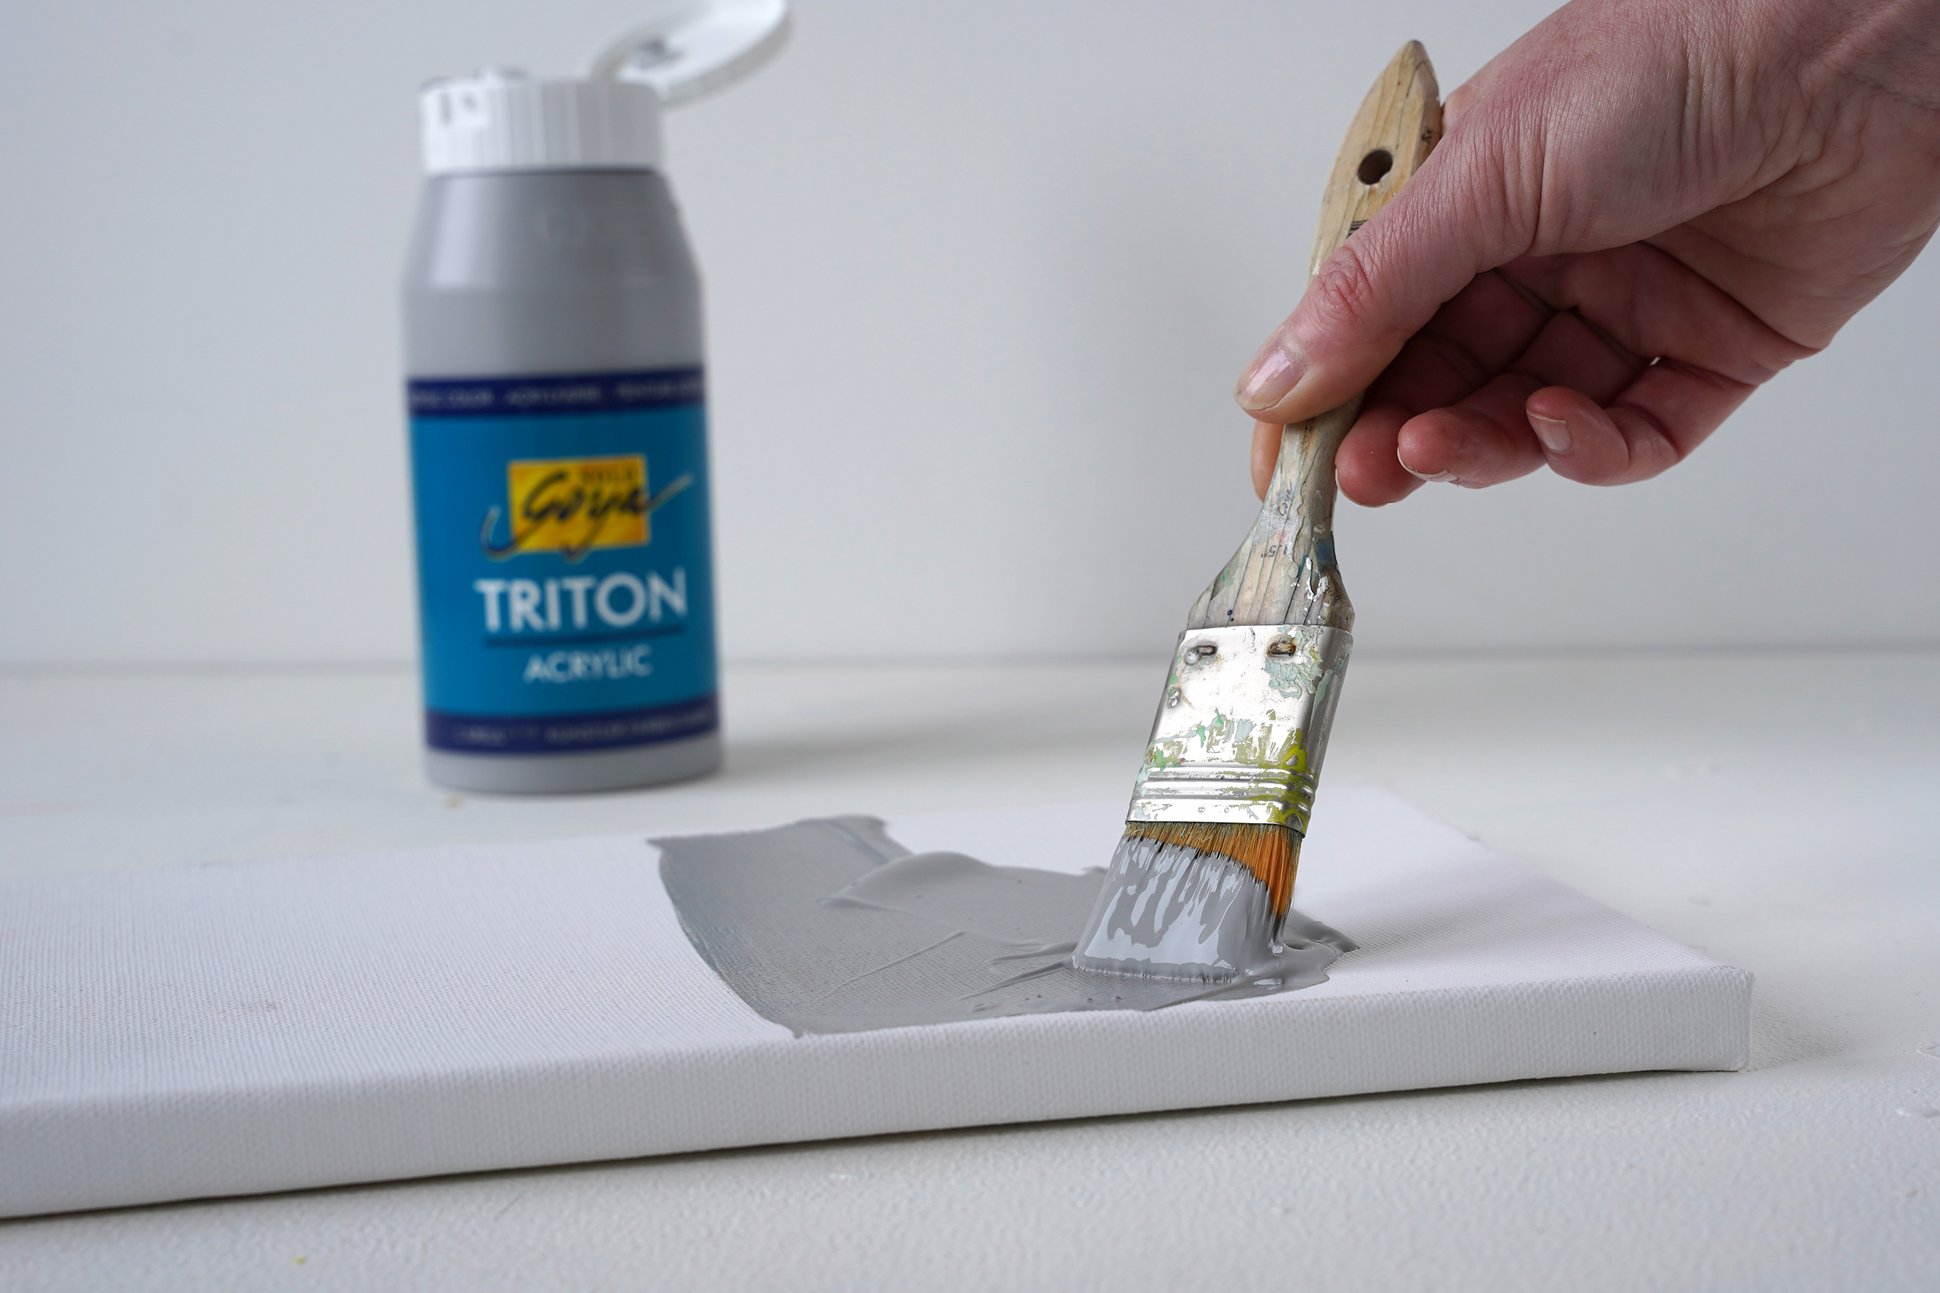 SOLO GOYA Triton Acrylic Neutralgrau grundieren Kunstwerk vorbereitung präparieren